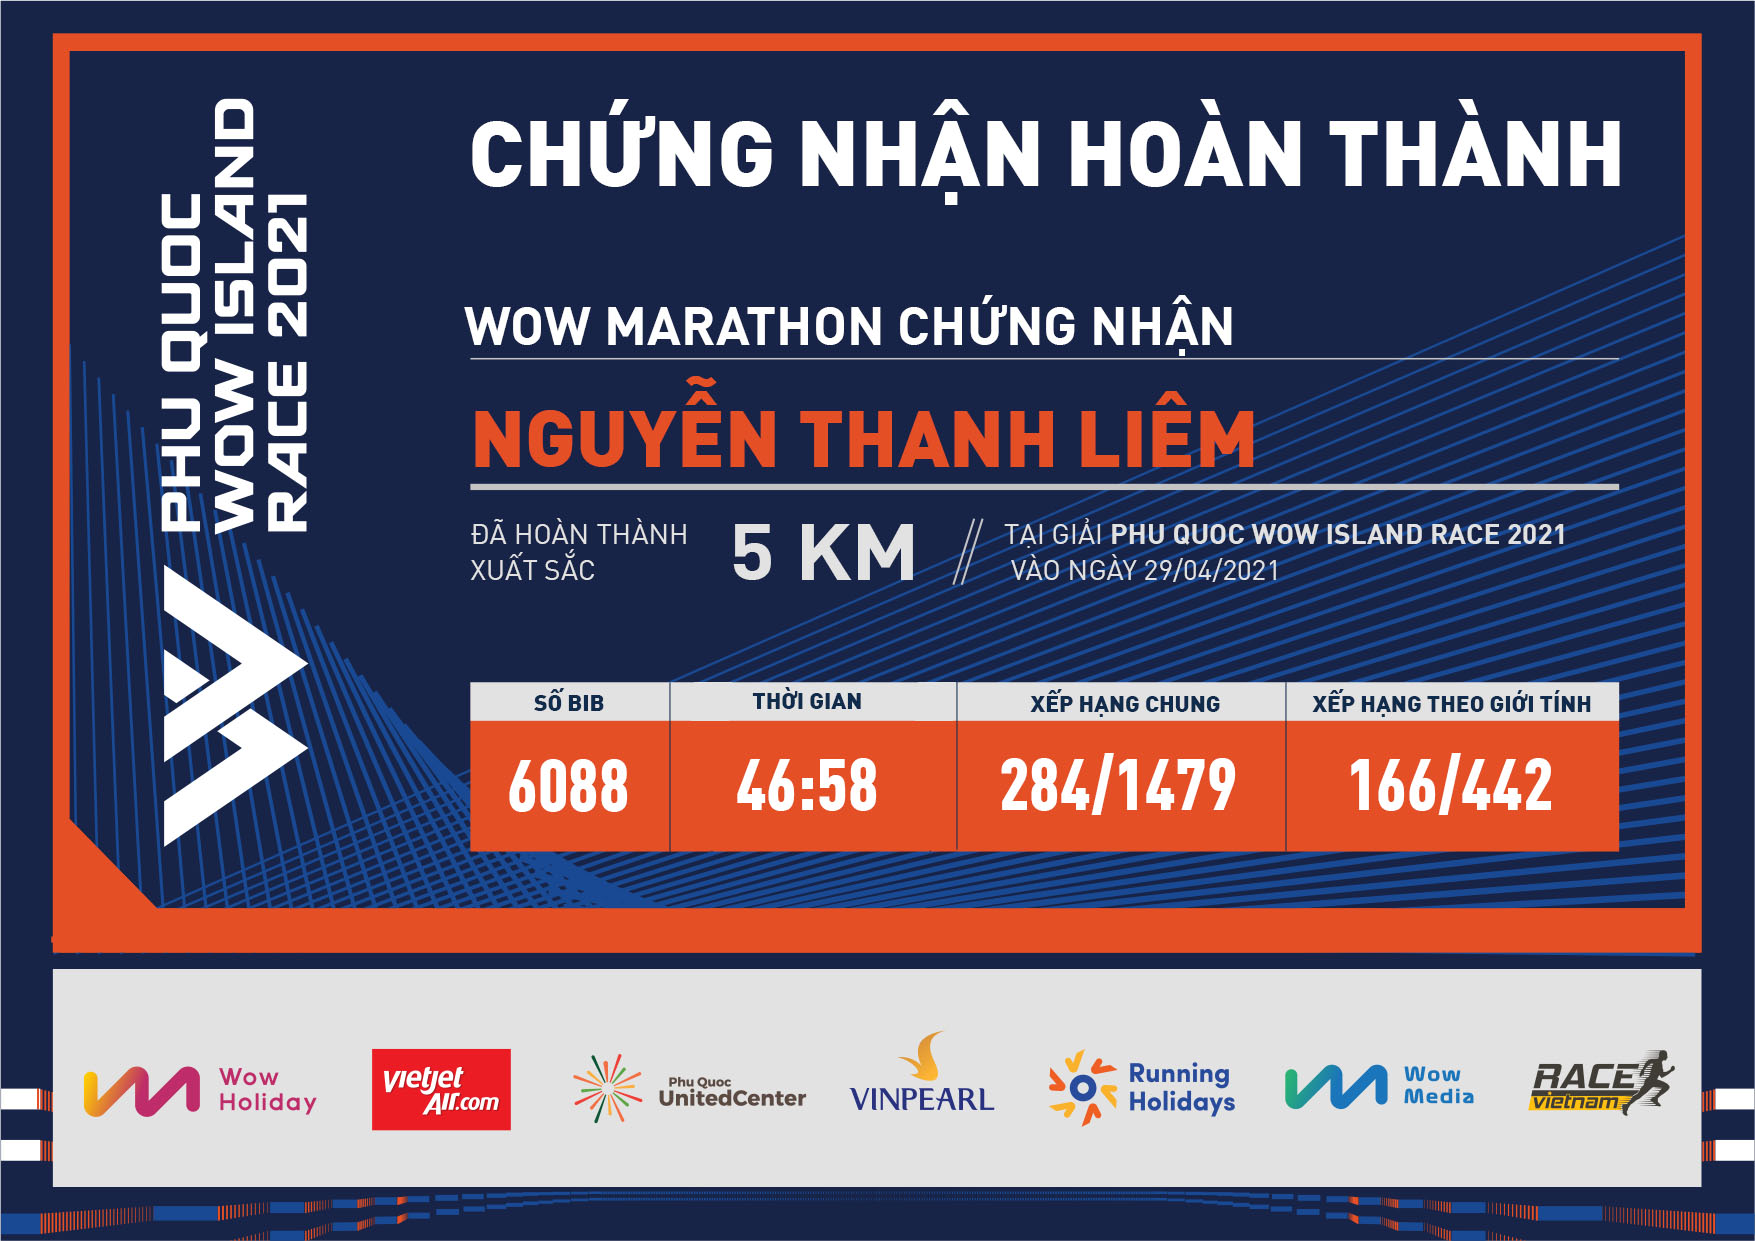 6088 - Nguyễn Thanh Liêm